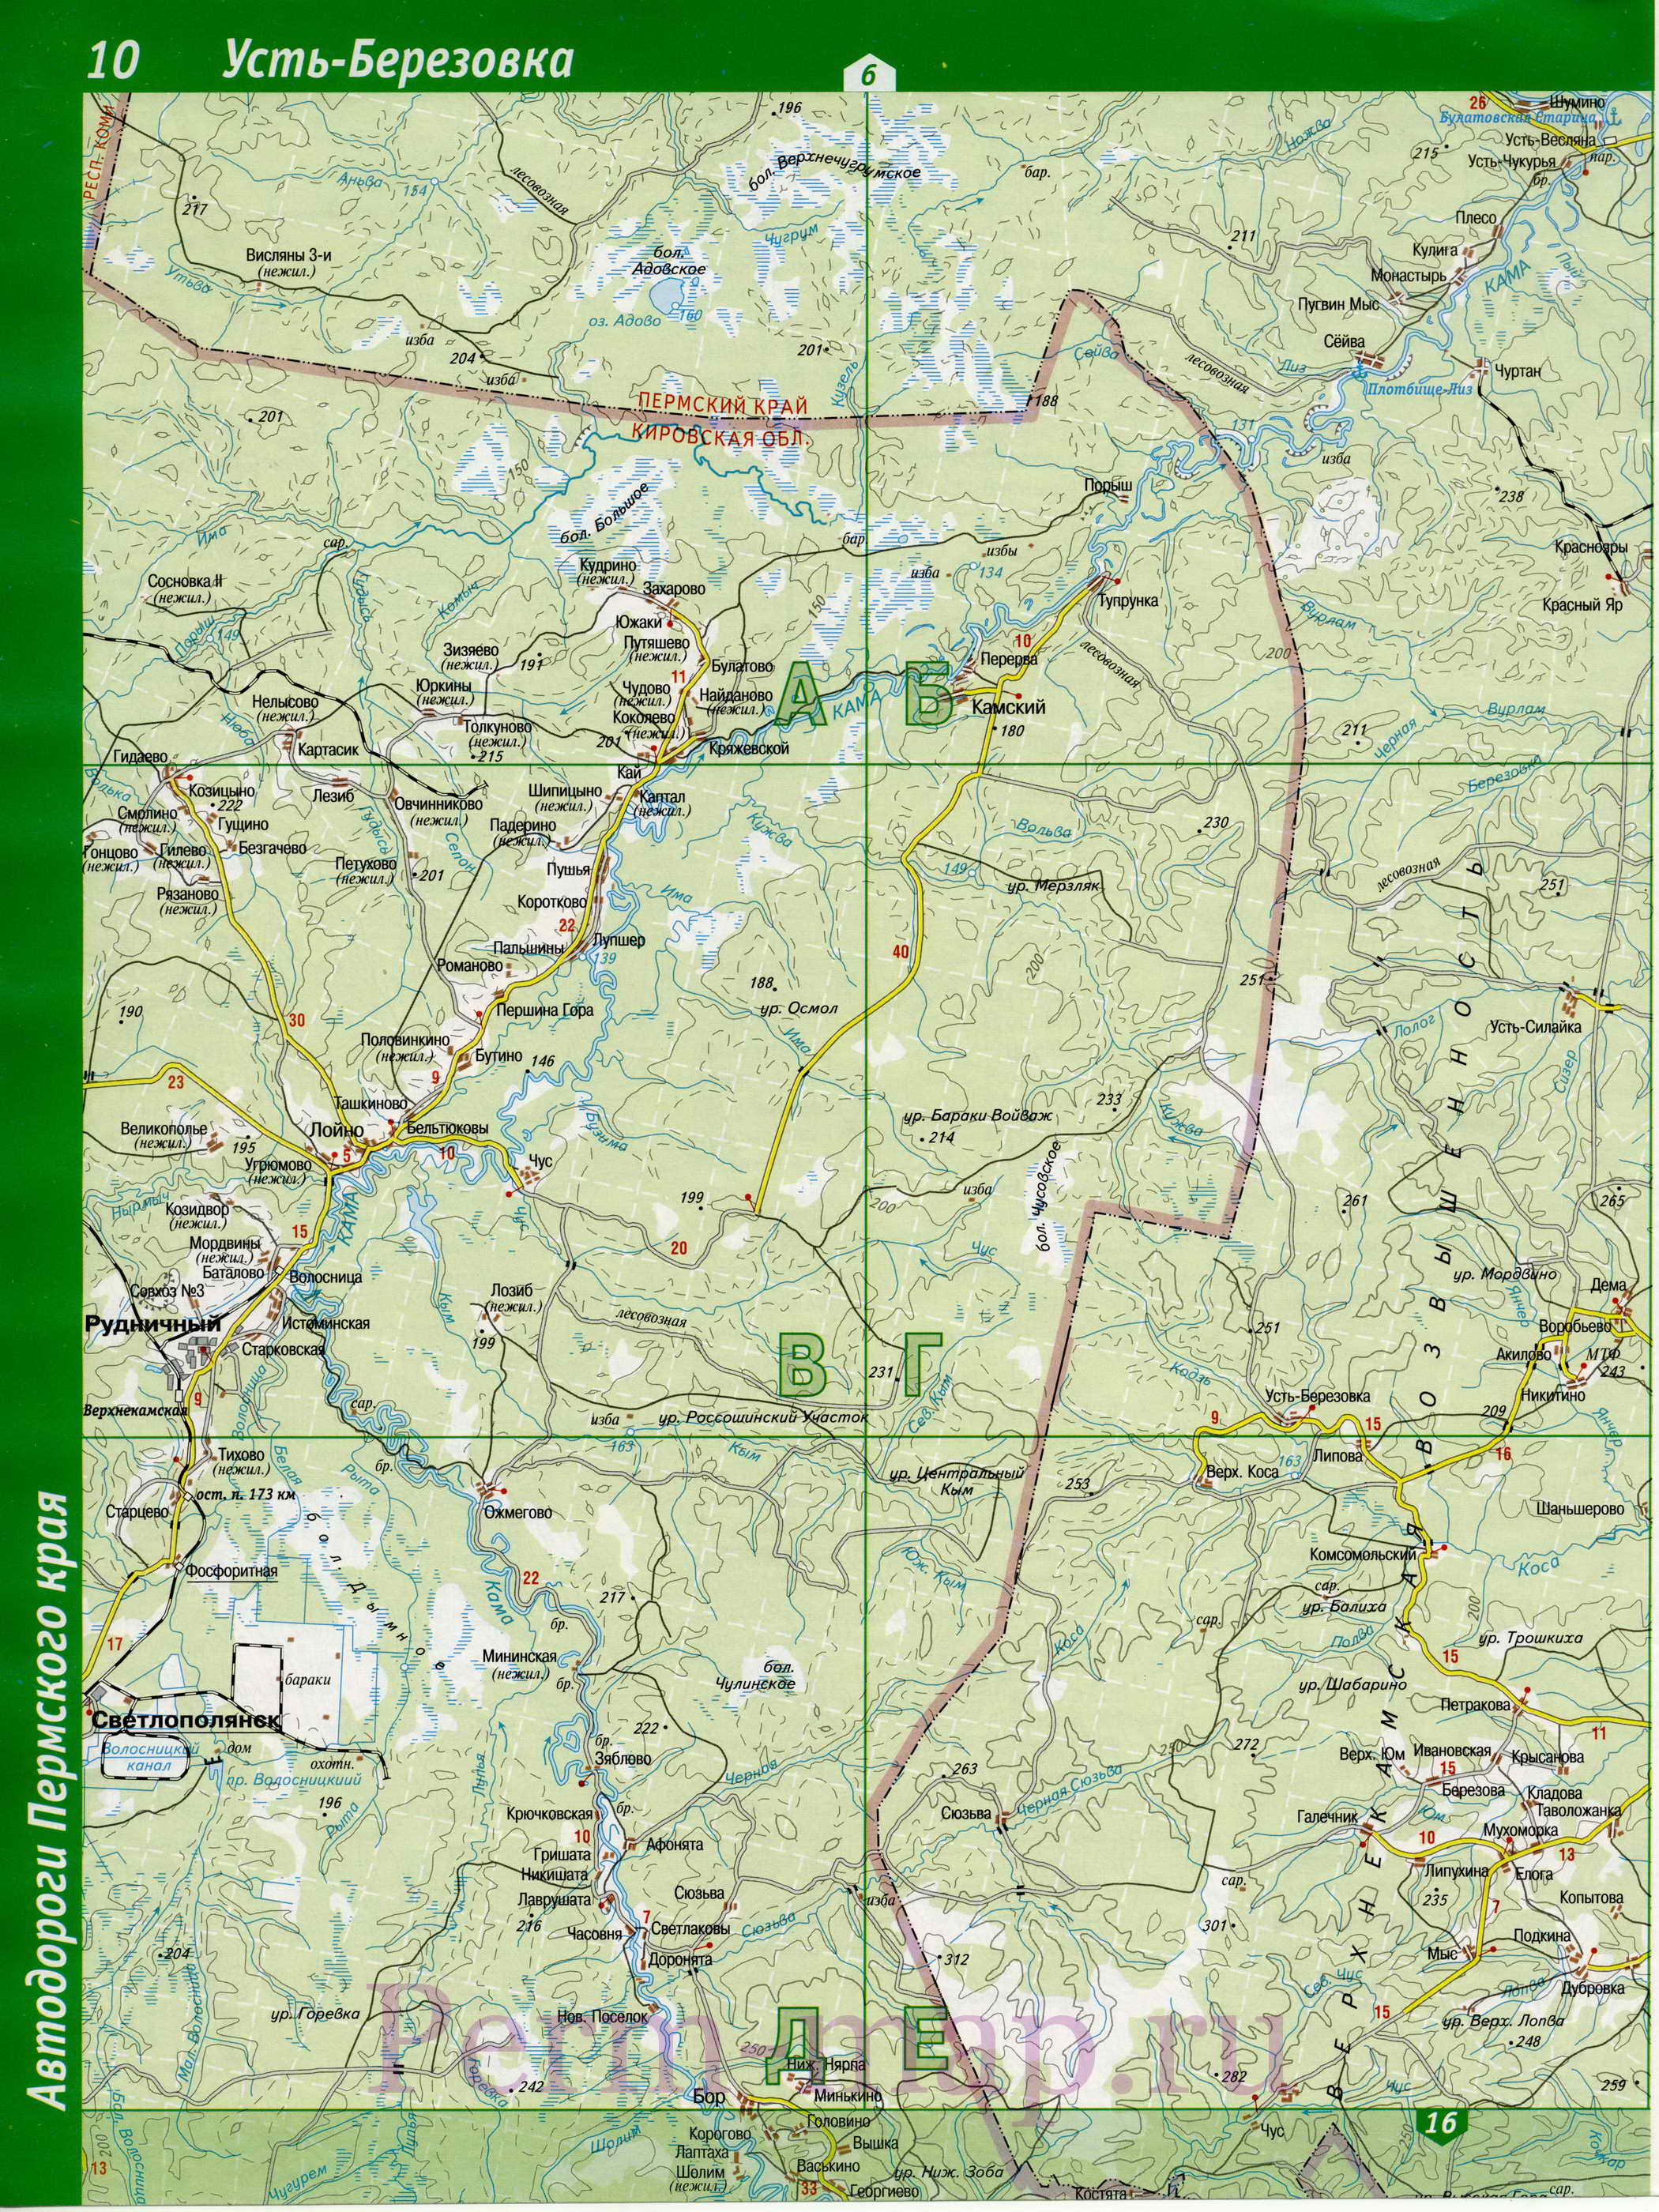 Гайнский район Коми-Пермяцкого автономного округа - топографическая карта.карта Гайнского района